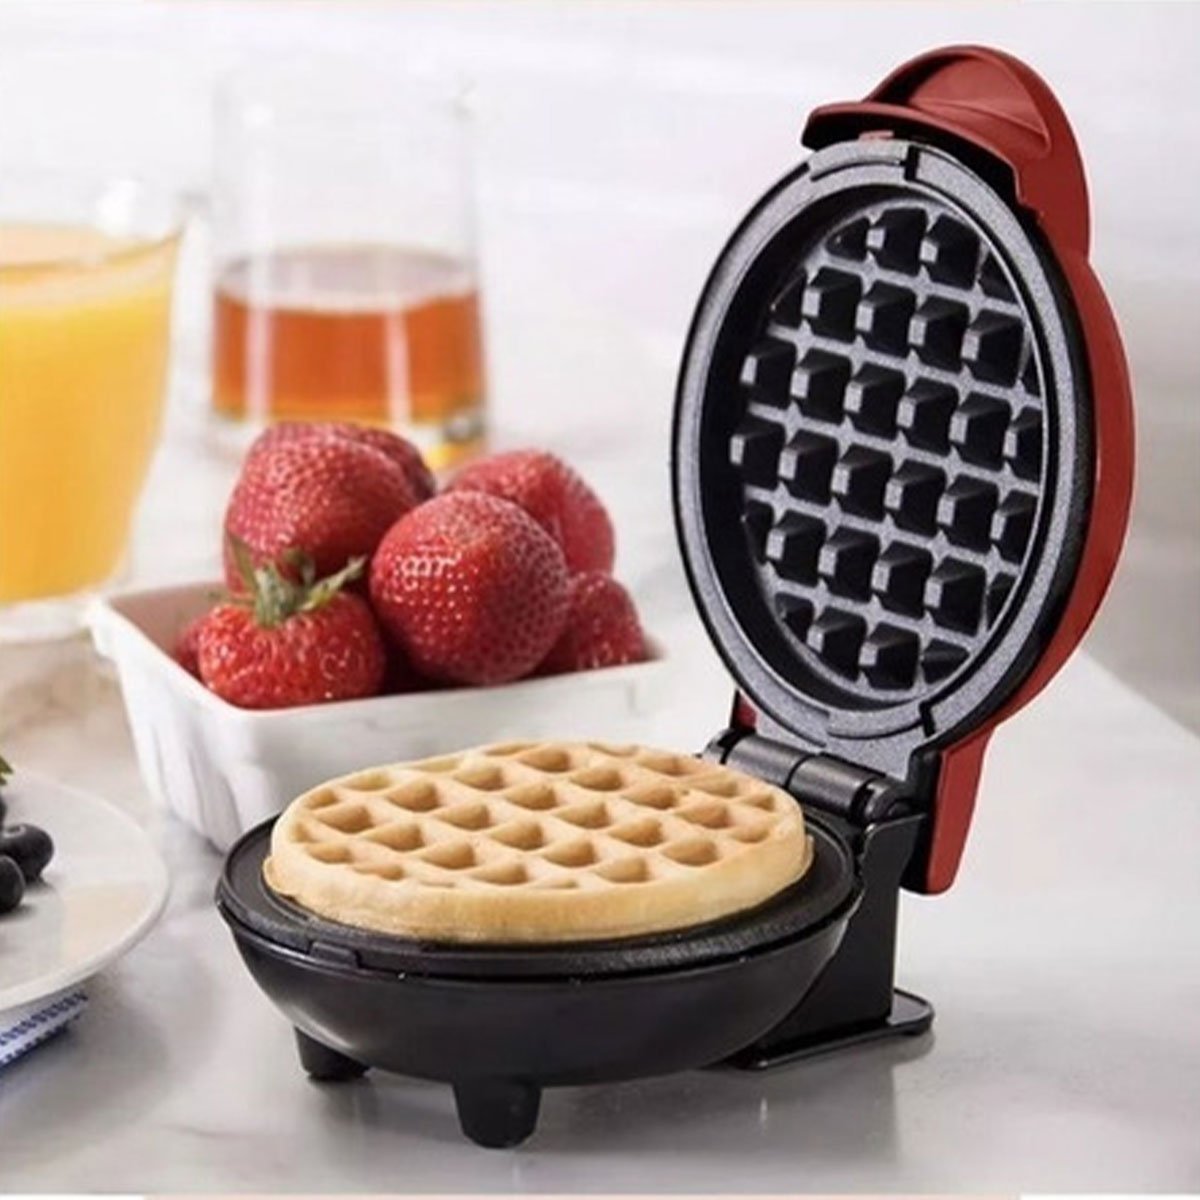 Mini Maquina de Waffles Panqueca Refeiçao Lanche Cozinha Cafe da Manha Placa Antiaderente Resistente - 2